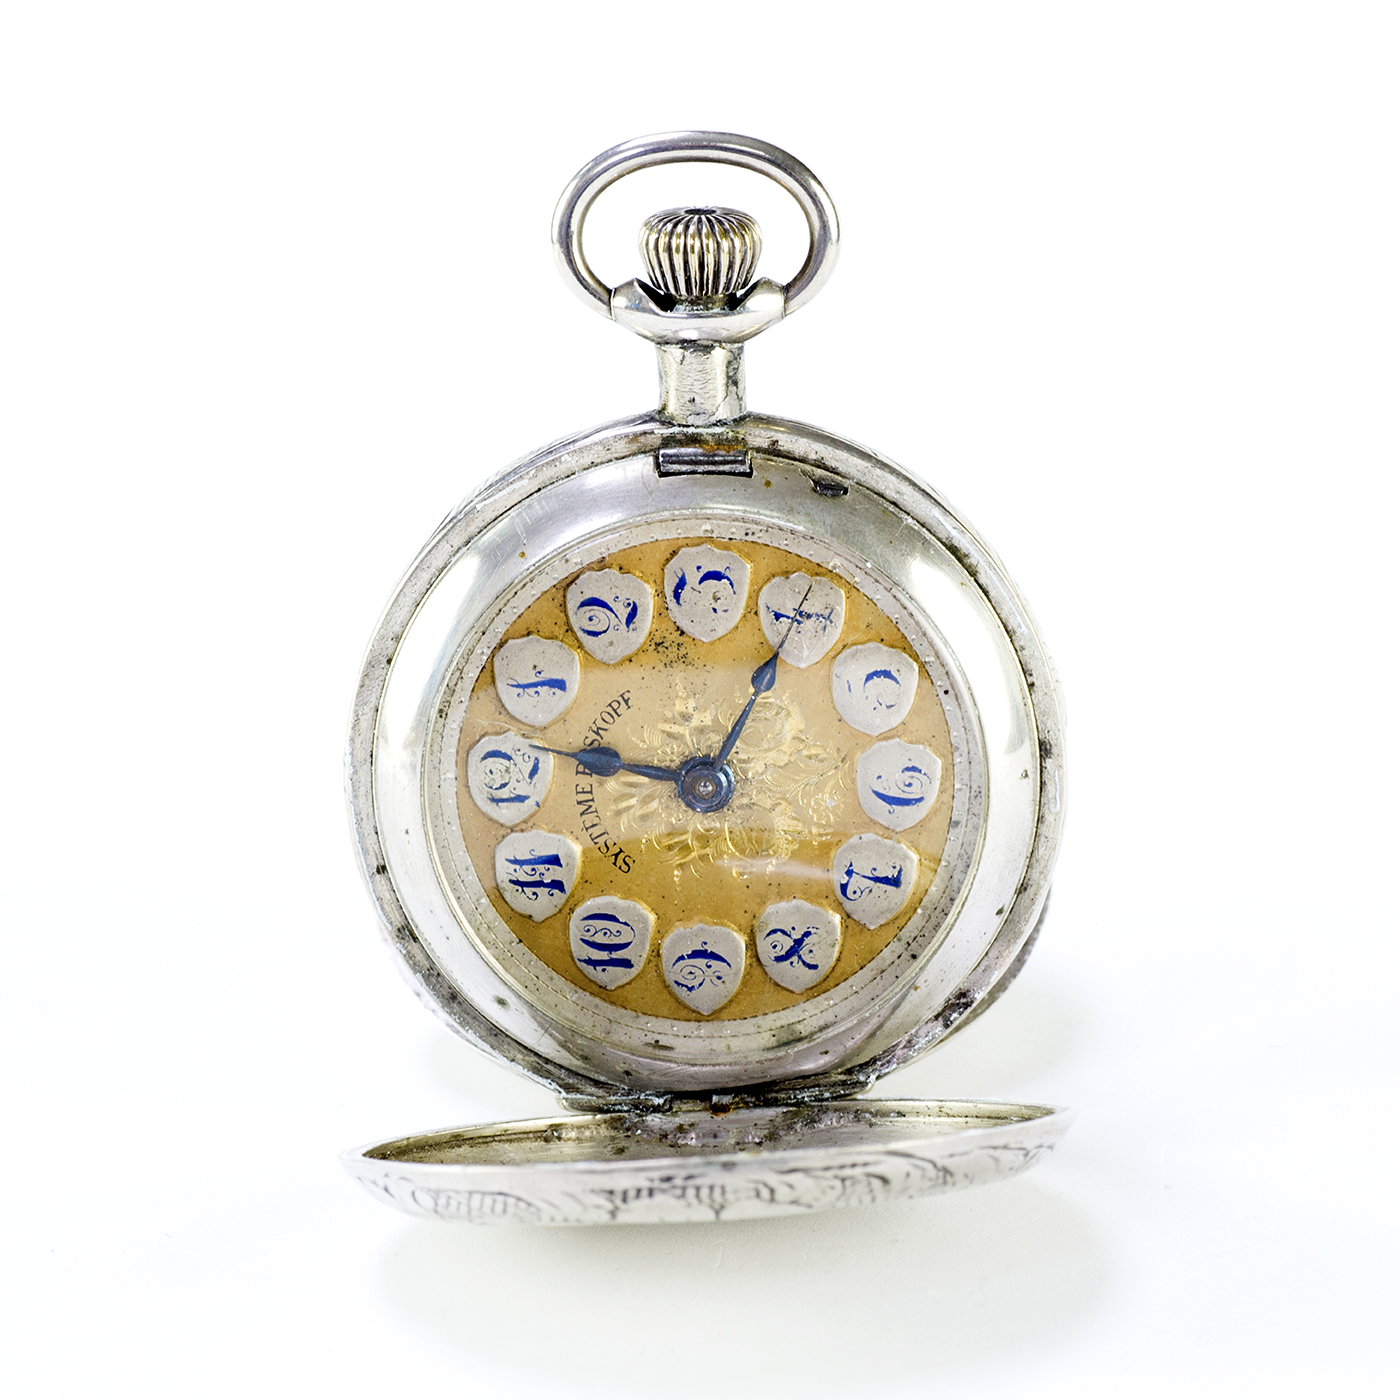 SYSTEME ROSKOPF. Reloj de bolsillo, saboneta y remontoir. Suiza. Ca. 1900.